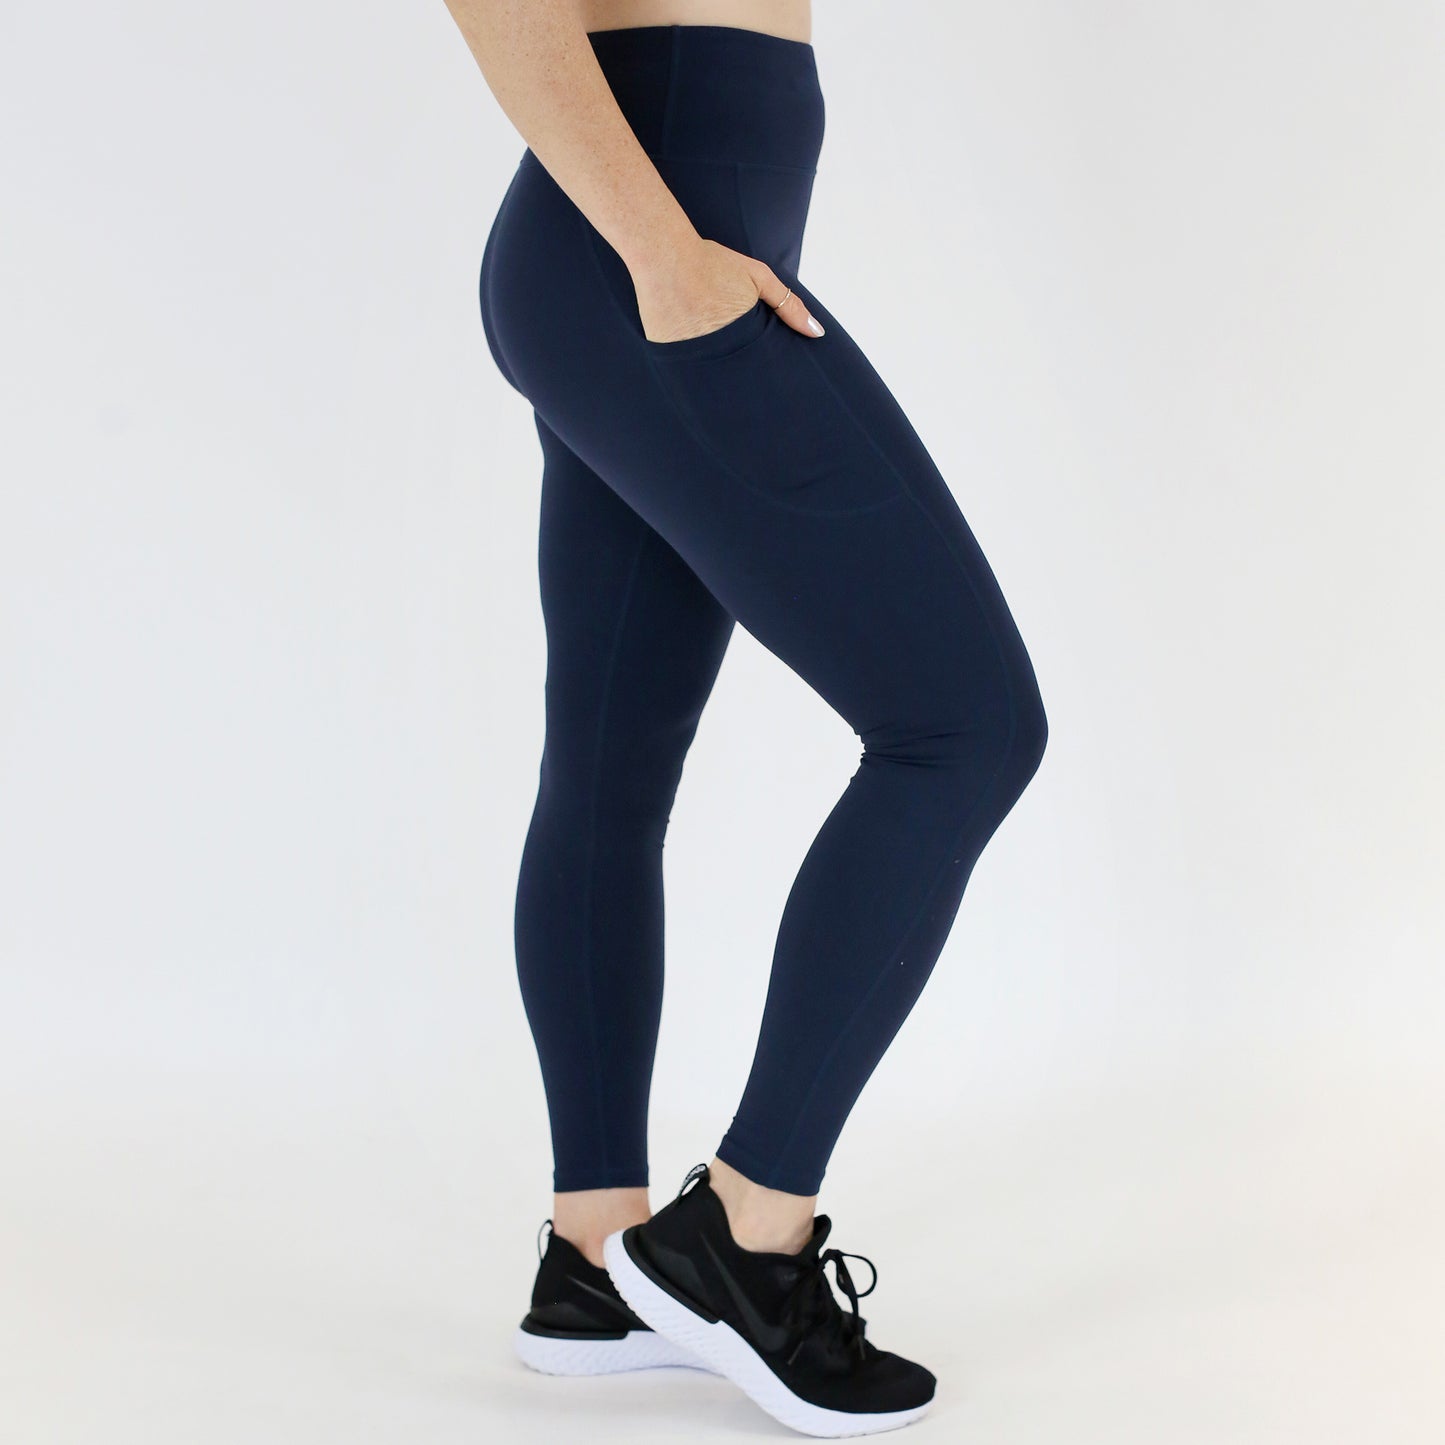 Navy blue capris women gym wear High waist 2 back pockets - Belore